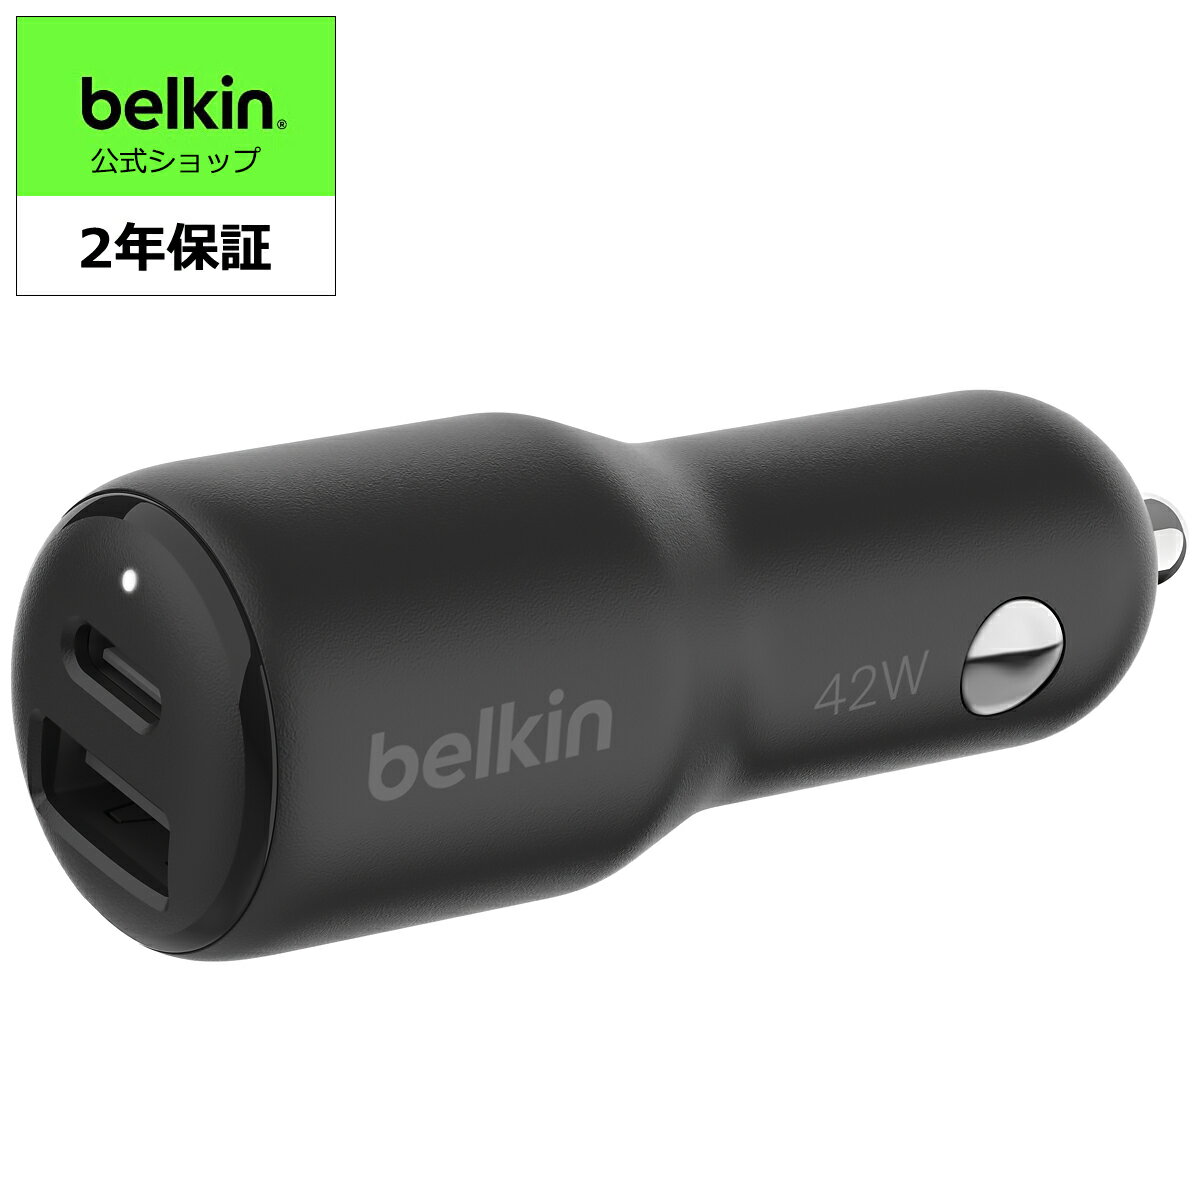 Belkin カーチャージャー 42W (30W USB-C x 1, 12W USB-A x 1) 車載充電器 USB PD対応 急速充電 PPS対応 USB-IF認証 iPhone/iPad/Android対応 ブラック CCB005qcBK